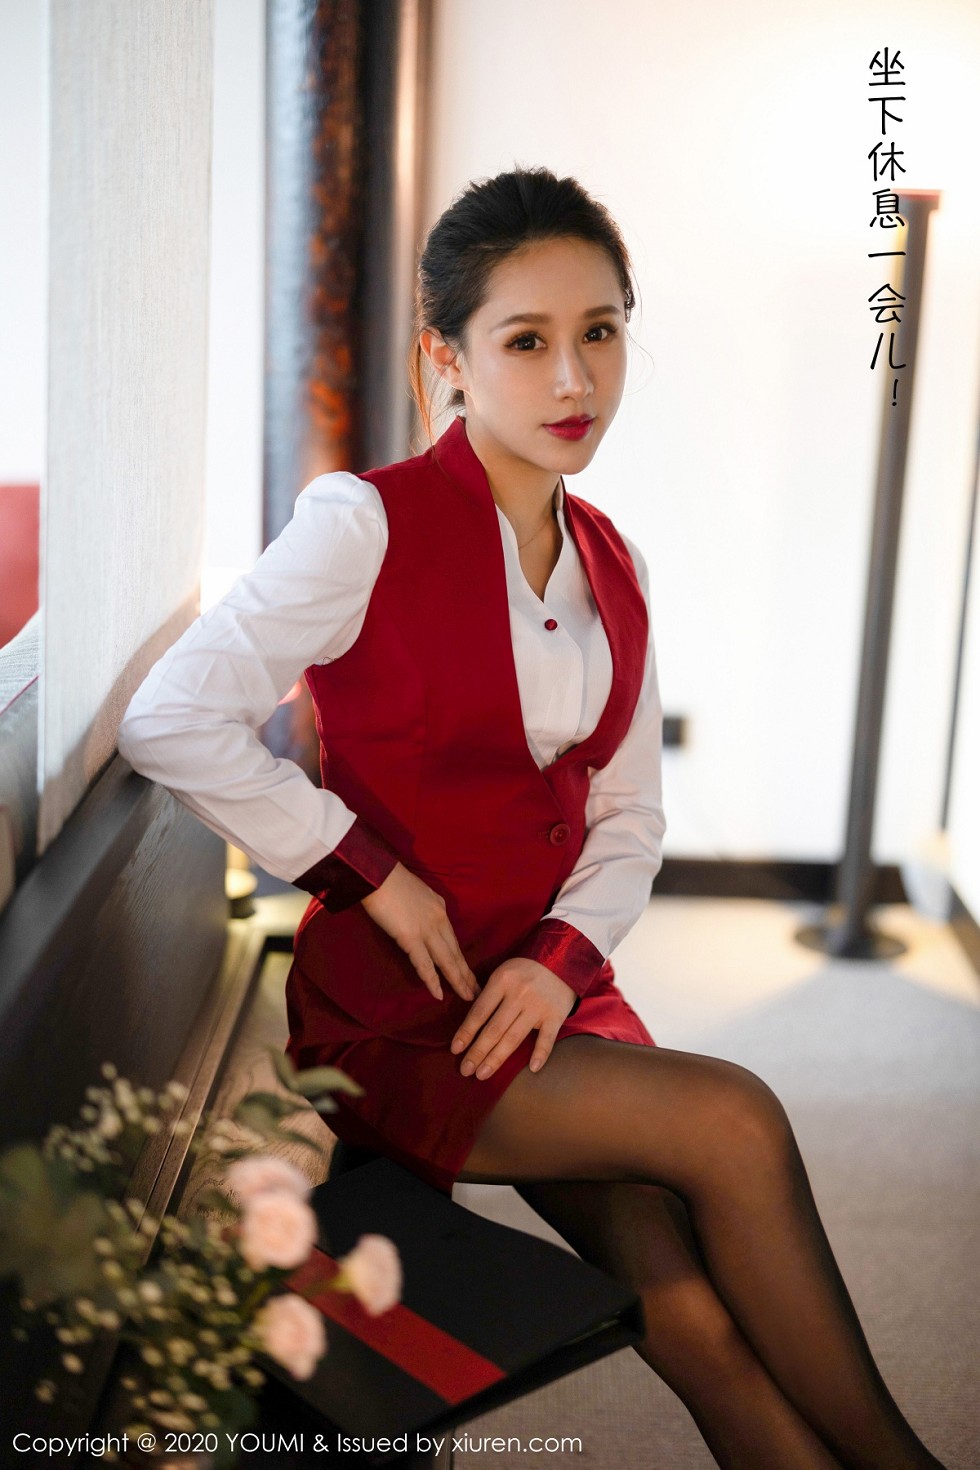 嫩模徐安安杭州旅拍私人管家剧情主题性感红色内衣完美诱惑写真